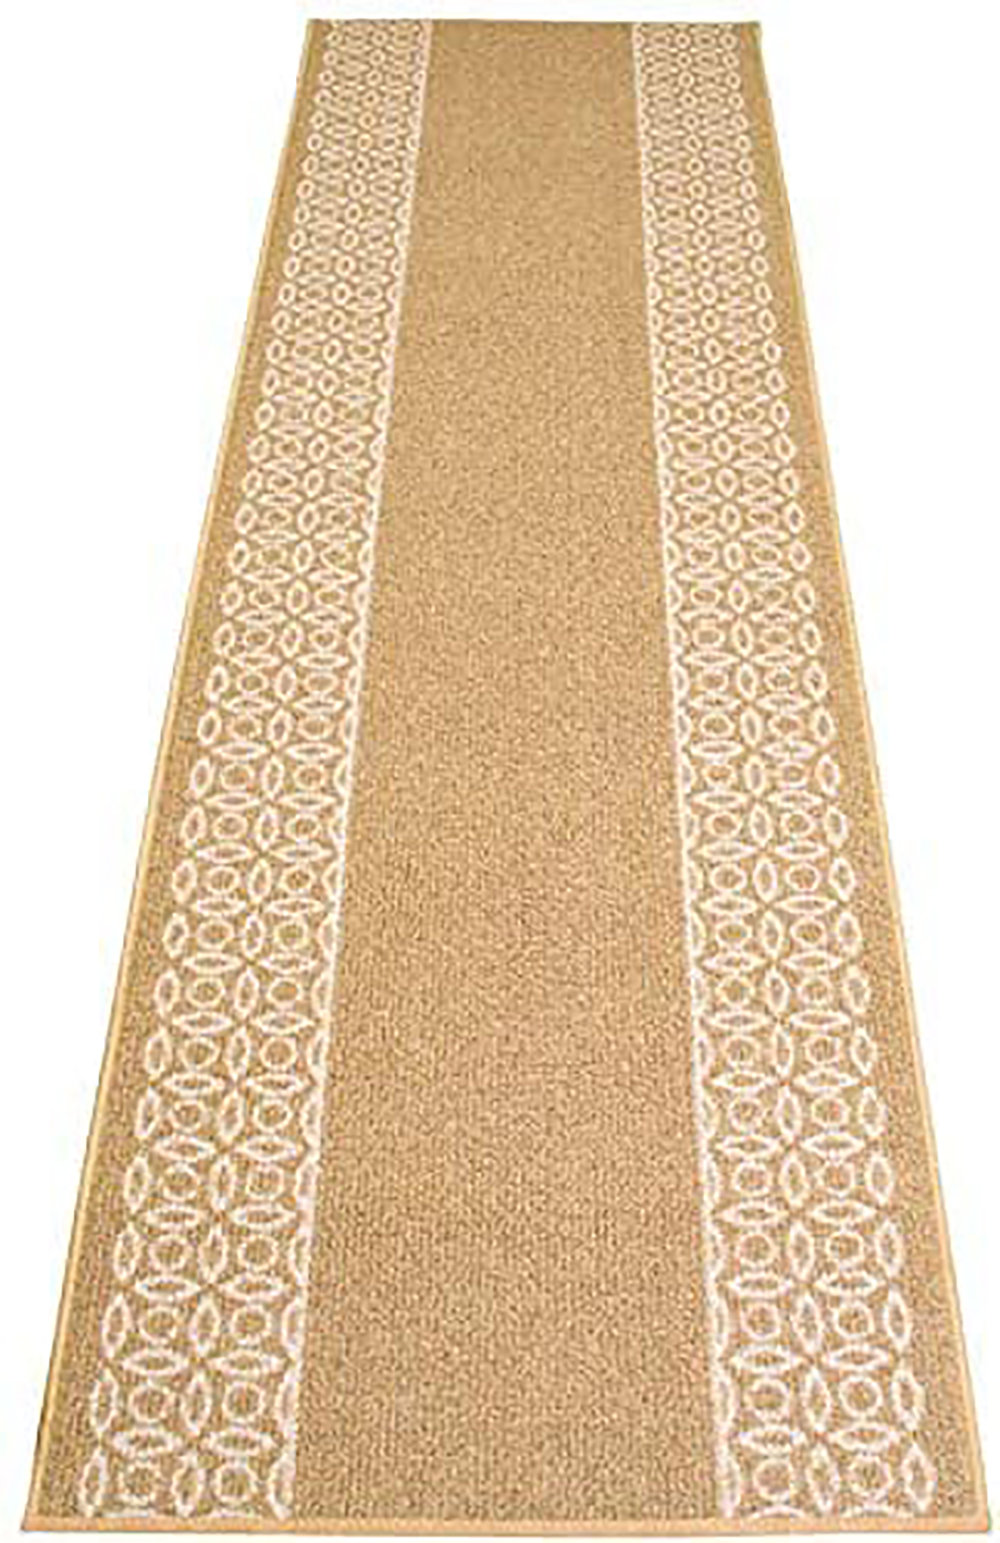 https://assets.wfcdn.com/im/98719444/compr-r85/1152/115215786/custom-size-runner-rug-berber-style-chain-bordered-beige-low-pile-slip-resistant-runner-rugs-by-feet.jpg